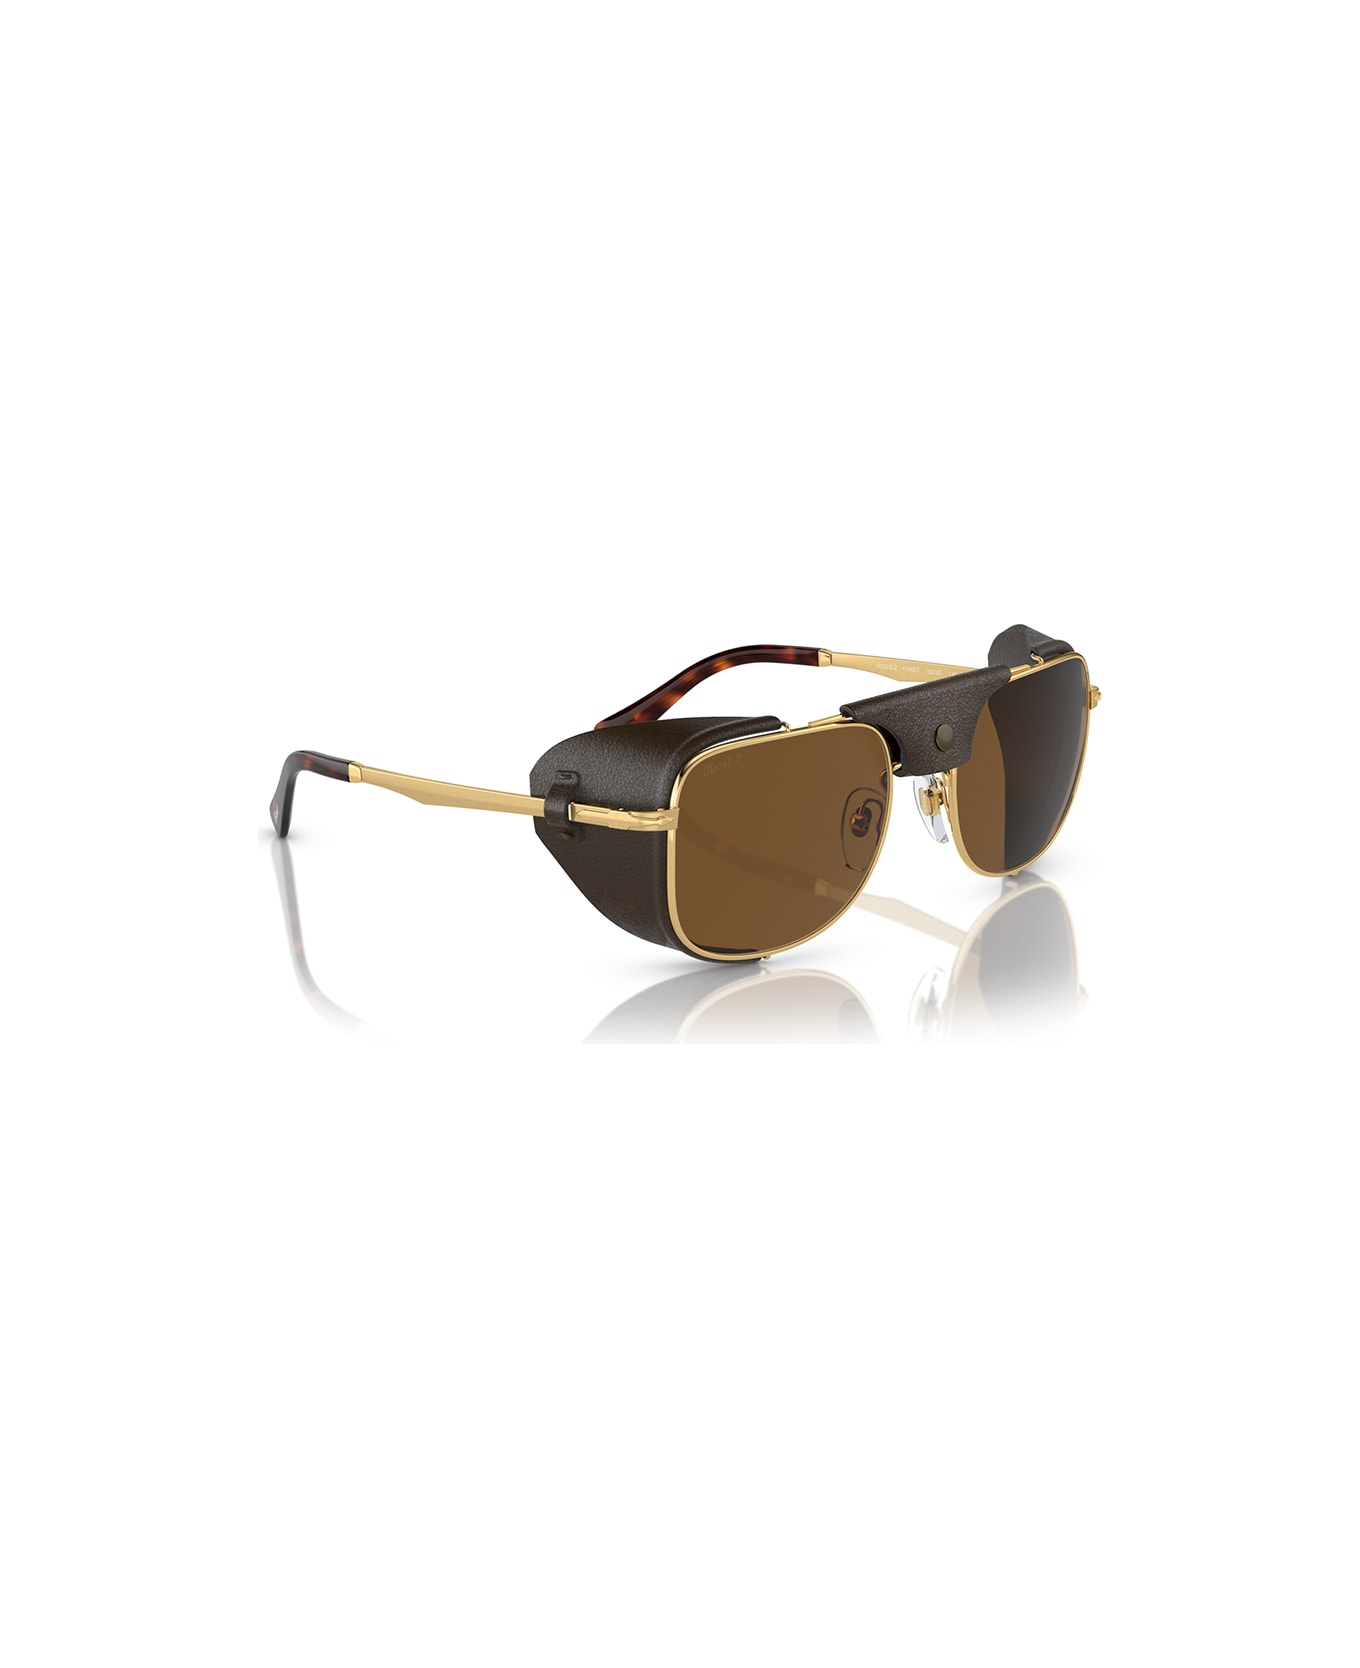 Persol Sunglasses - Oro/Marrone